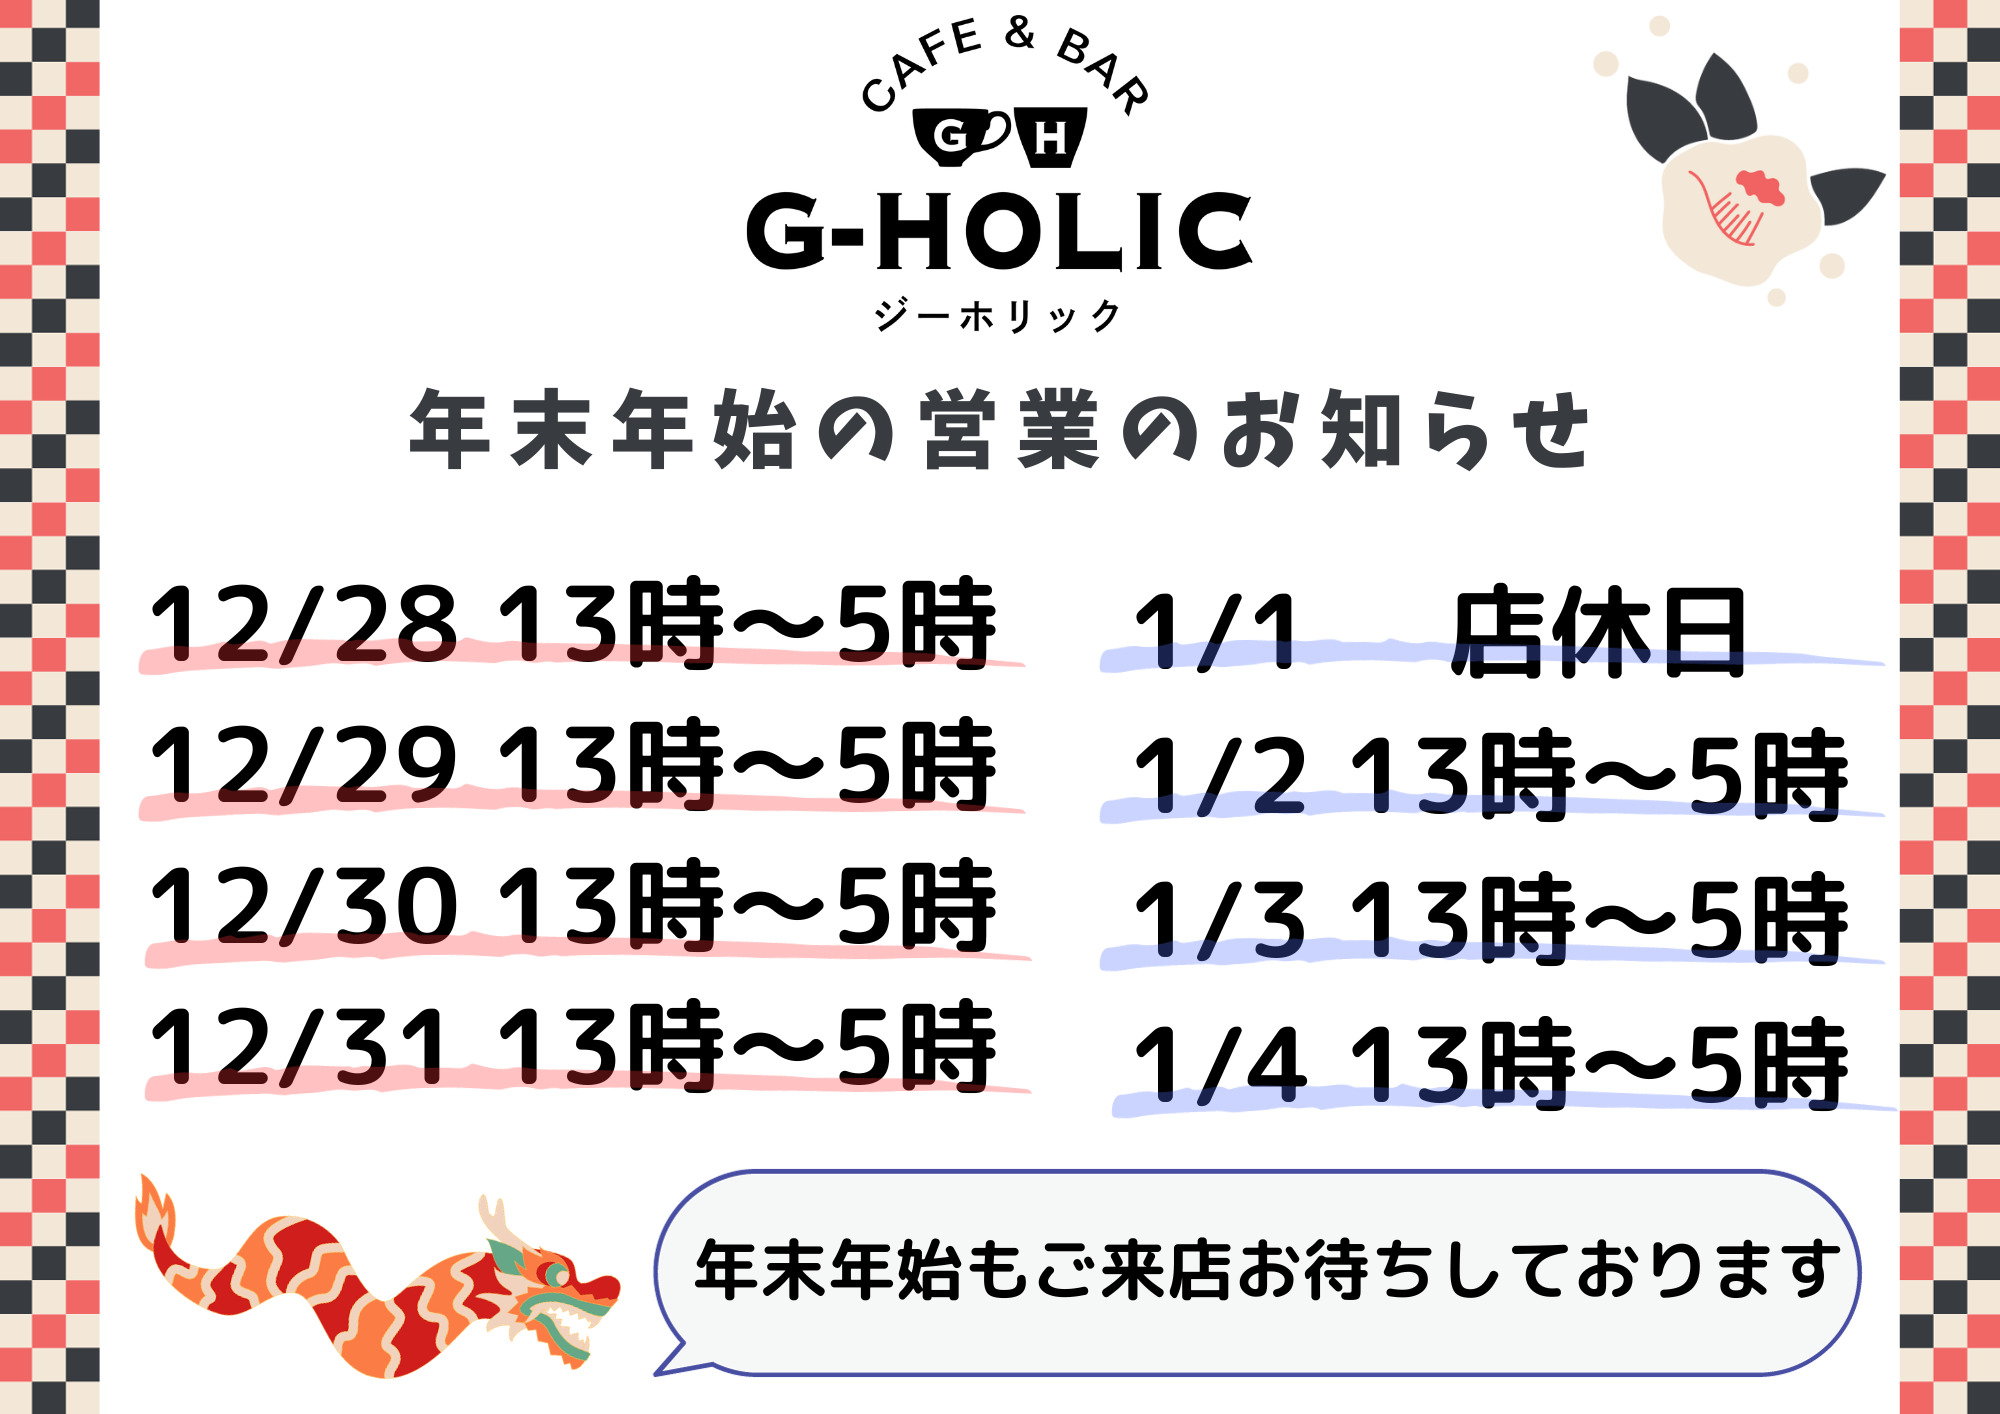 ボードゲームバーG-HOLIC-大阪梅田店